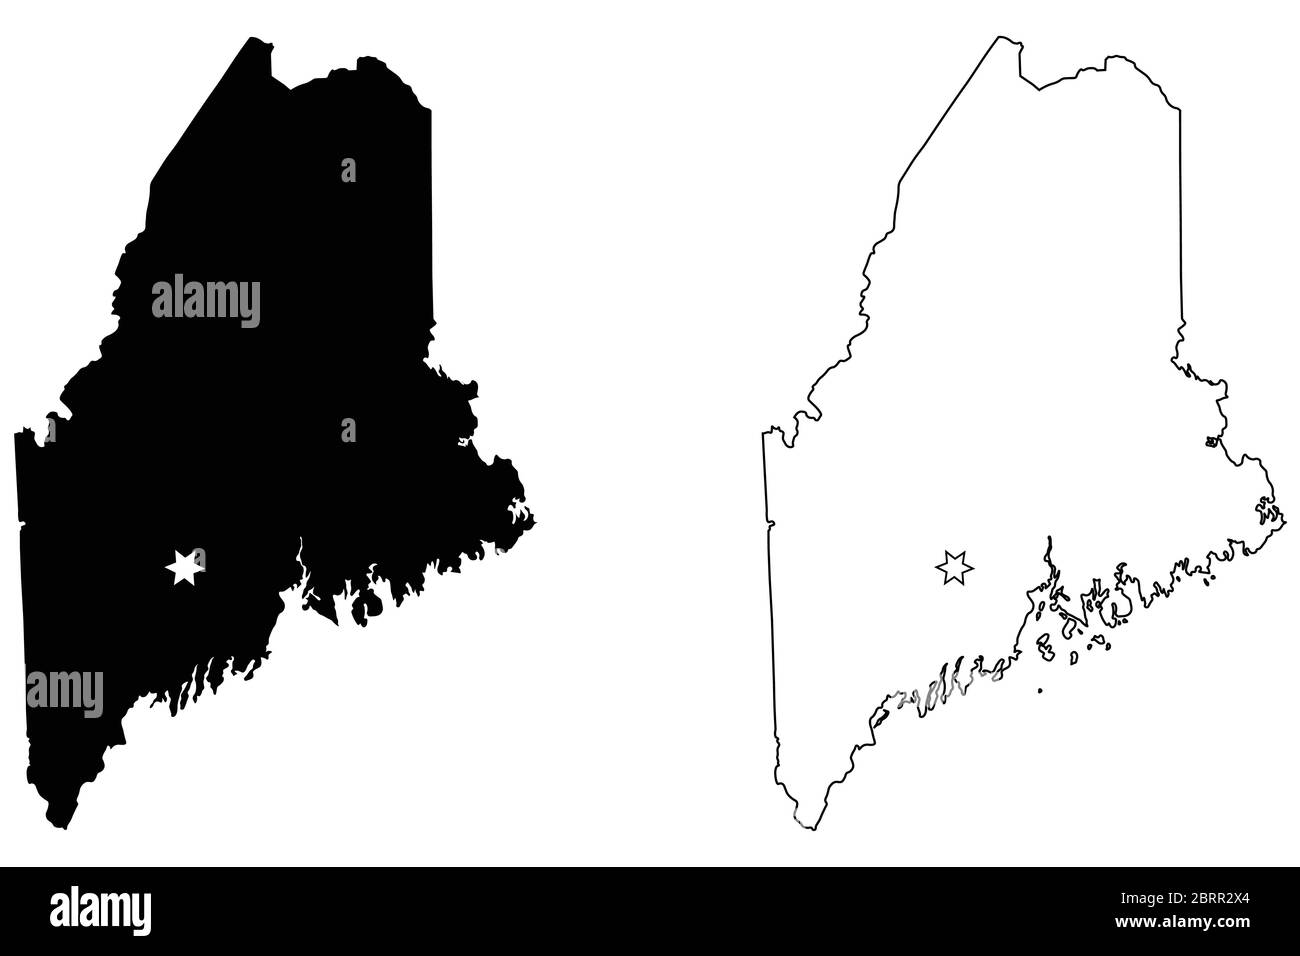 Maine ME State Map USA mit Capital City Star in Augusta. Schwarze Silhouette und Umriss isoliert auf weißem Hintergrund. EPS-Vektor Stock Vektor